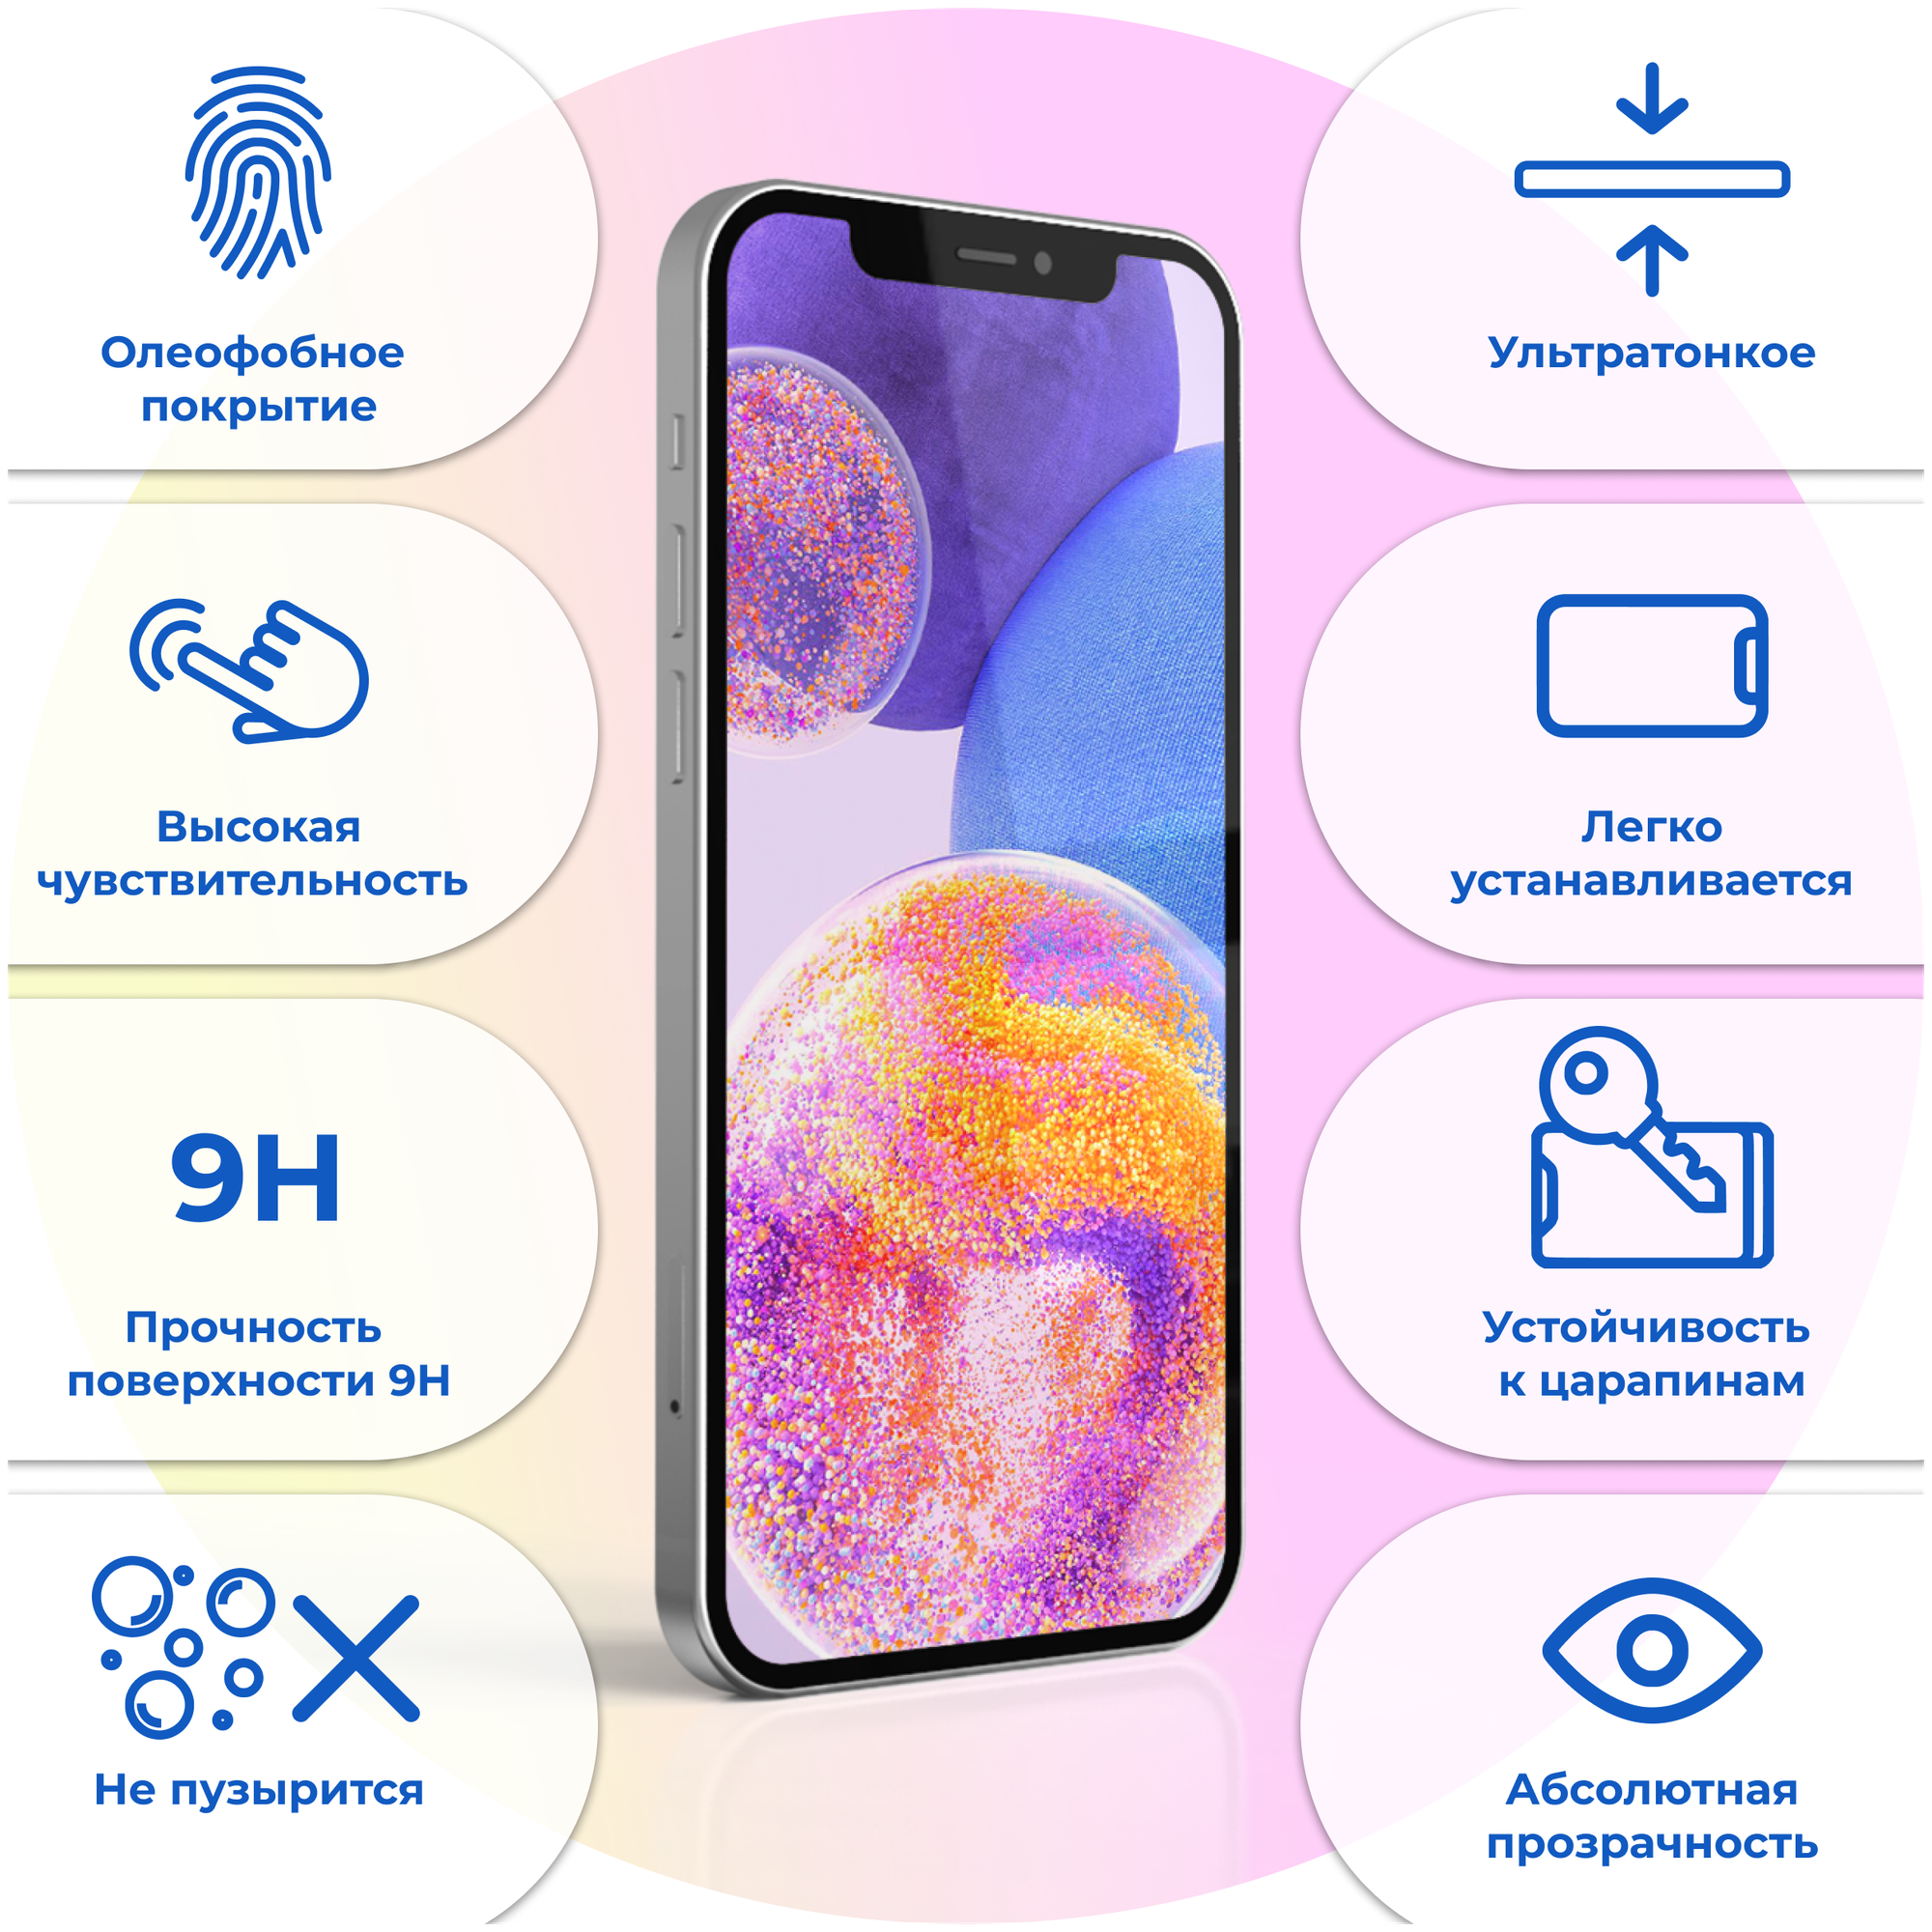 Противоударное защитное стекло дляартфона Samsung Galaxy A6 2018 / Полноэкранное стекло с олеофобным покрытием на телефон Самсунг Галакси А6 2018